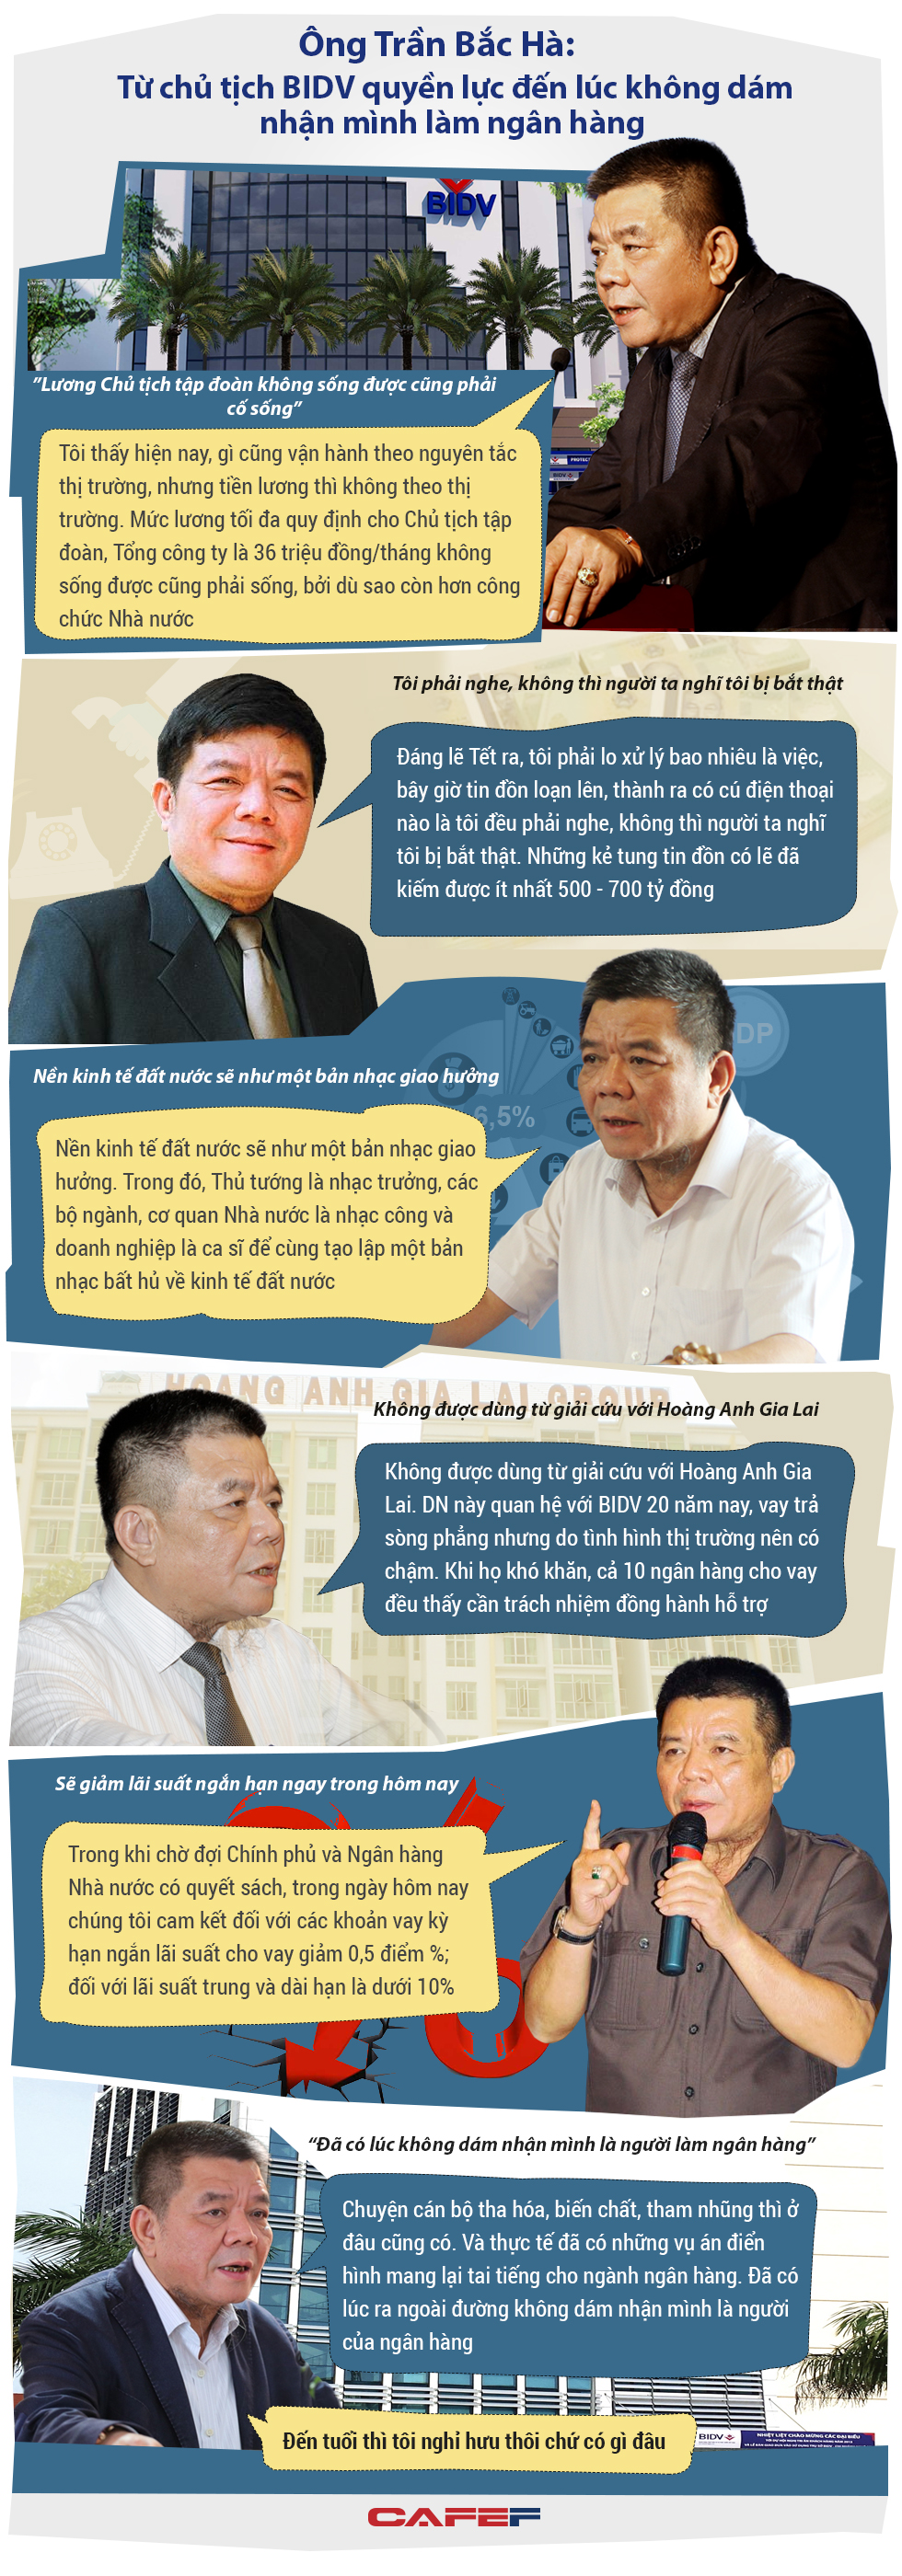 Ông Trần Bắc Hà: Từ chủ tịch BIDV quyền lực đến có lúc không dám nhận mình làm ngân hàng